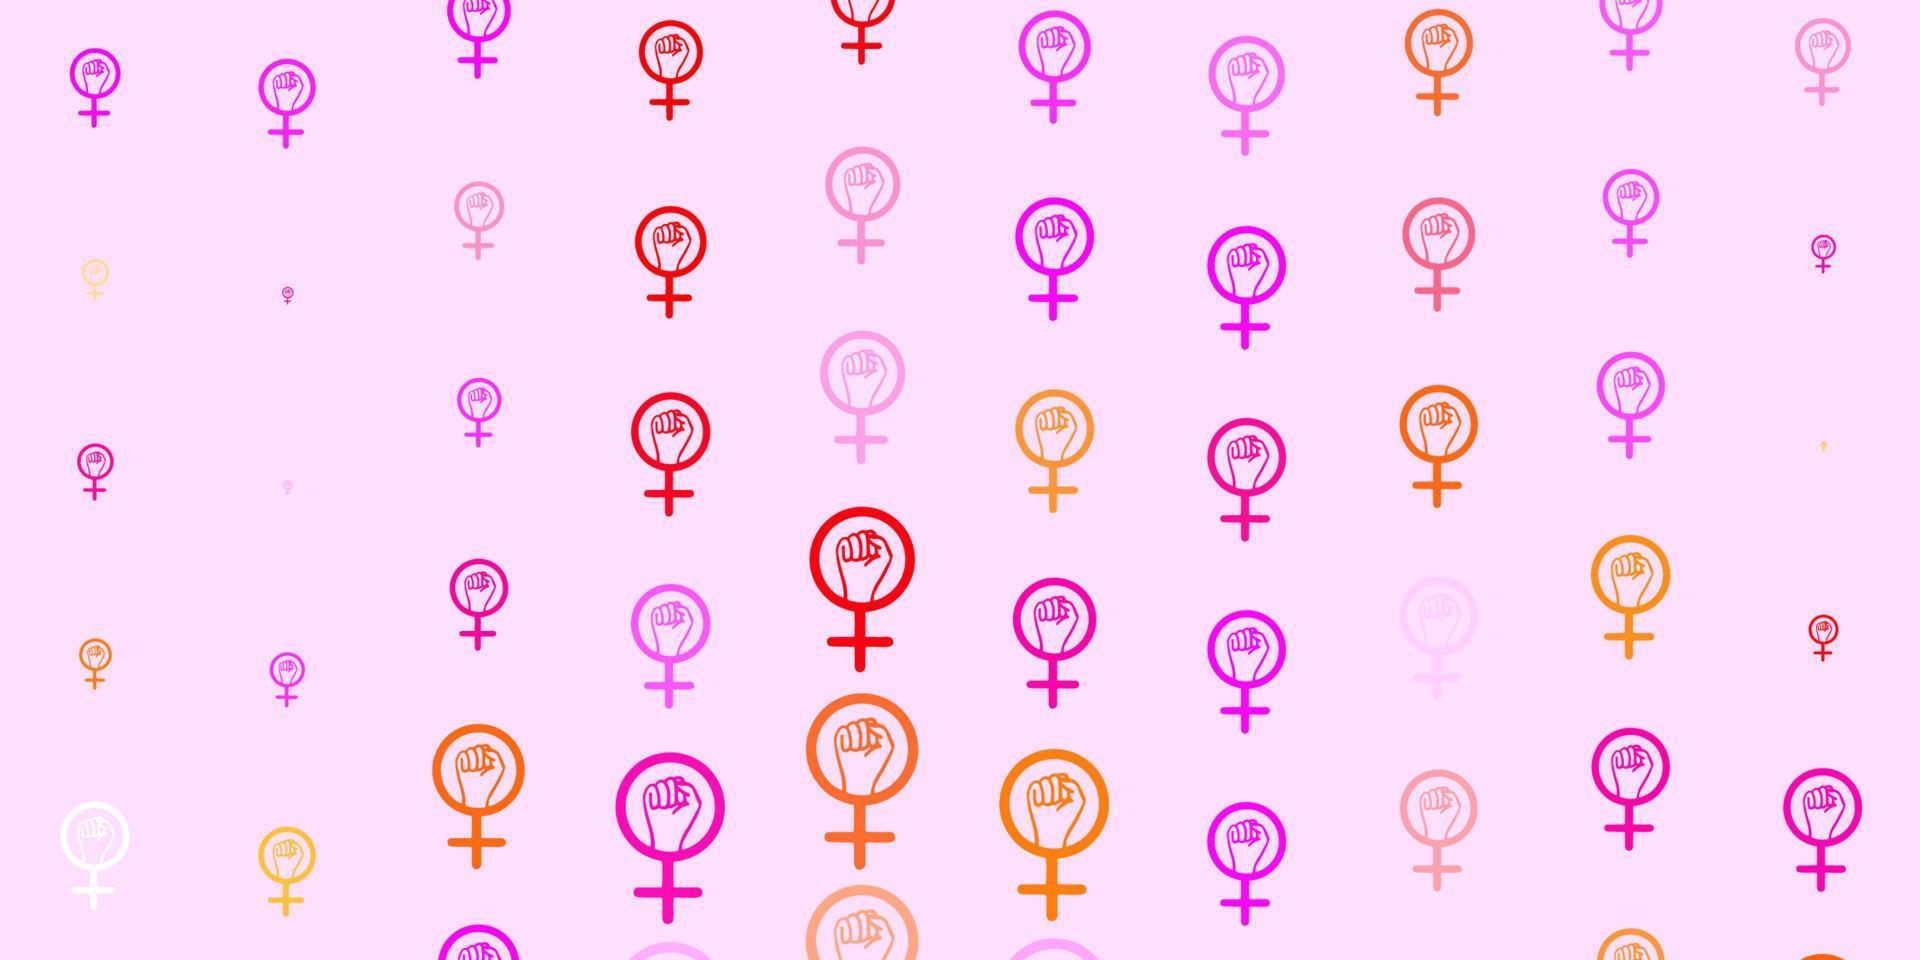 textura de vetor rosa claro, amarelo com símbolos de direitos das mulheres.